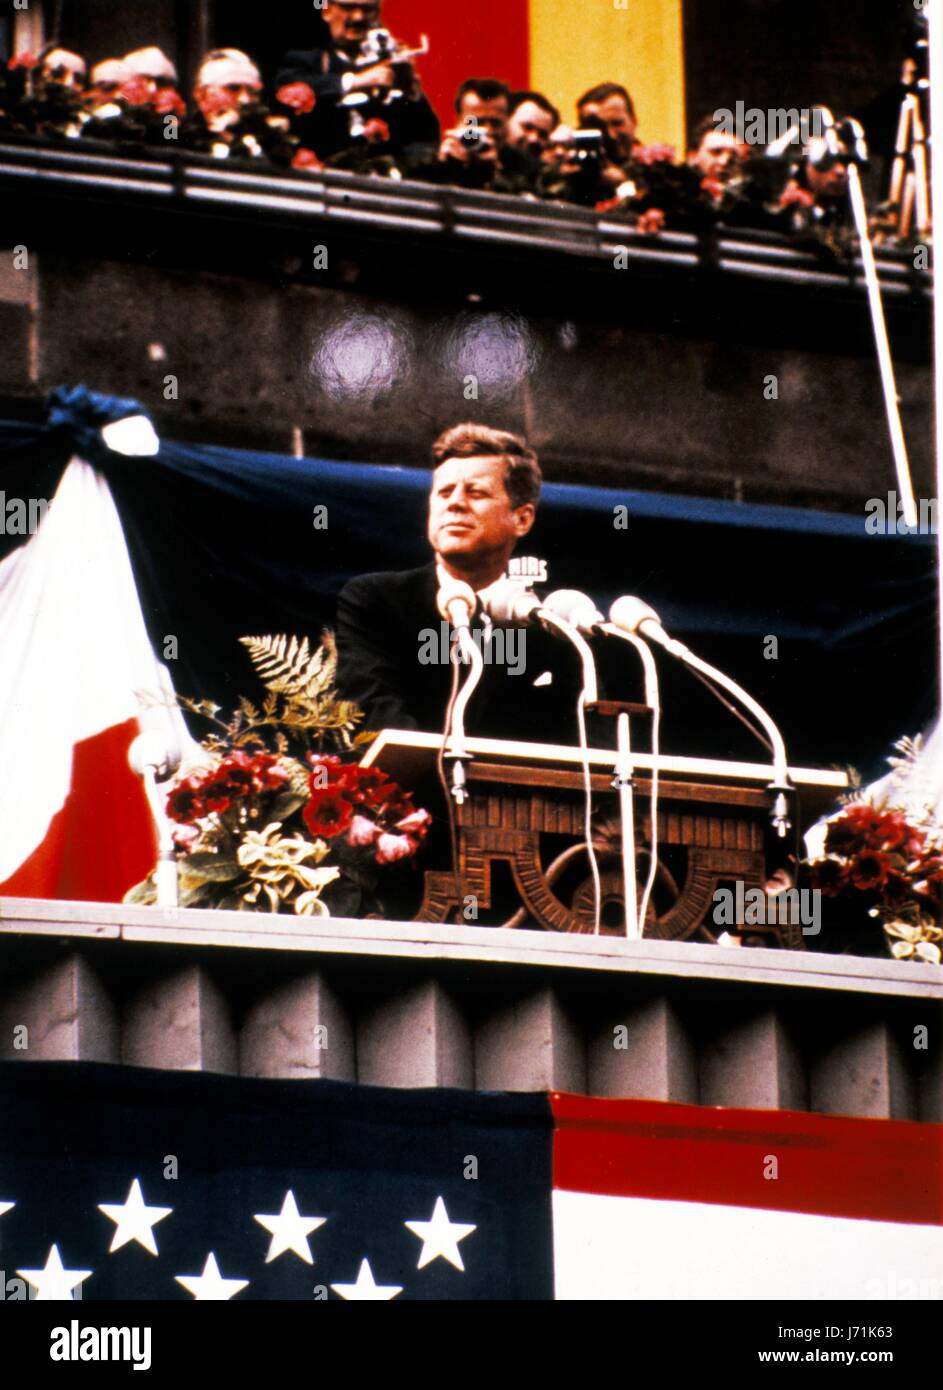 John F. Kennedy, le 35e Président de la nation, aurait eu 100 ans le 29 mai 2017. Avec le centenaire de la naissance de John F. Kennedy, l'héritage de l'ancien président est célébré dans tout le pays. Sur la photo : 26 juin 1963 - Berlin, Allemagne - Le président américain John F. Kennedy en face de Berlin Schoeneberg town hall, où il a prononcé le message d'espoir pour les Berlinois de l'ouest qui vivaient dans une enclave à l'intérieur de l'Allemagne de l'Est et craignaient une possible à l'est l'occupation allemande. Le discours est connu pour sa célèbre phrase ''Ich bin ein Berliner'' et est considéré comme l'un des meilleurs de Kennedy, Banque D'Images